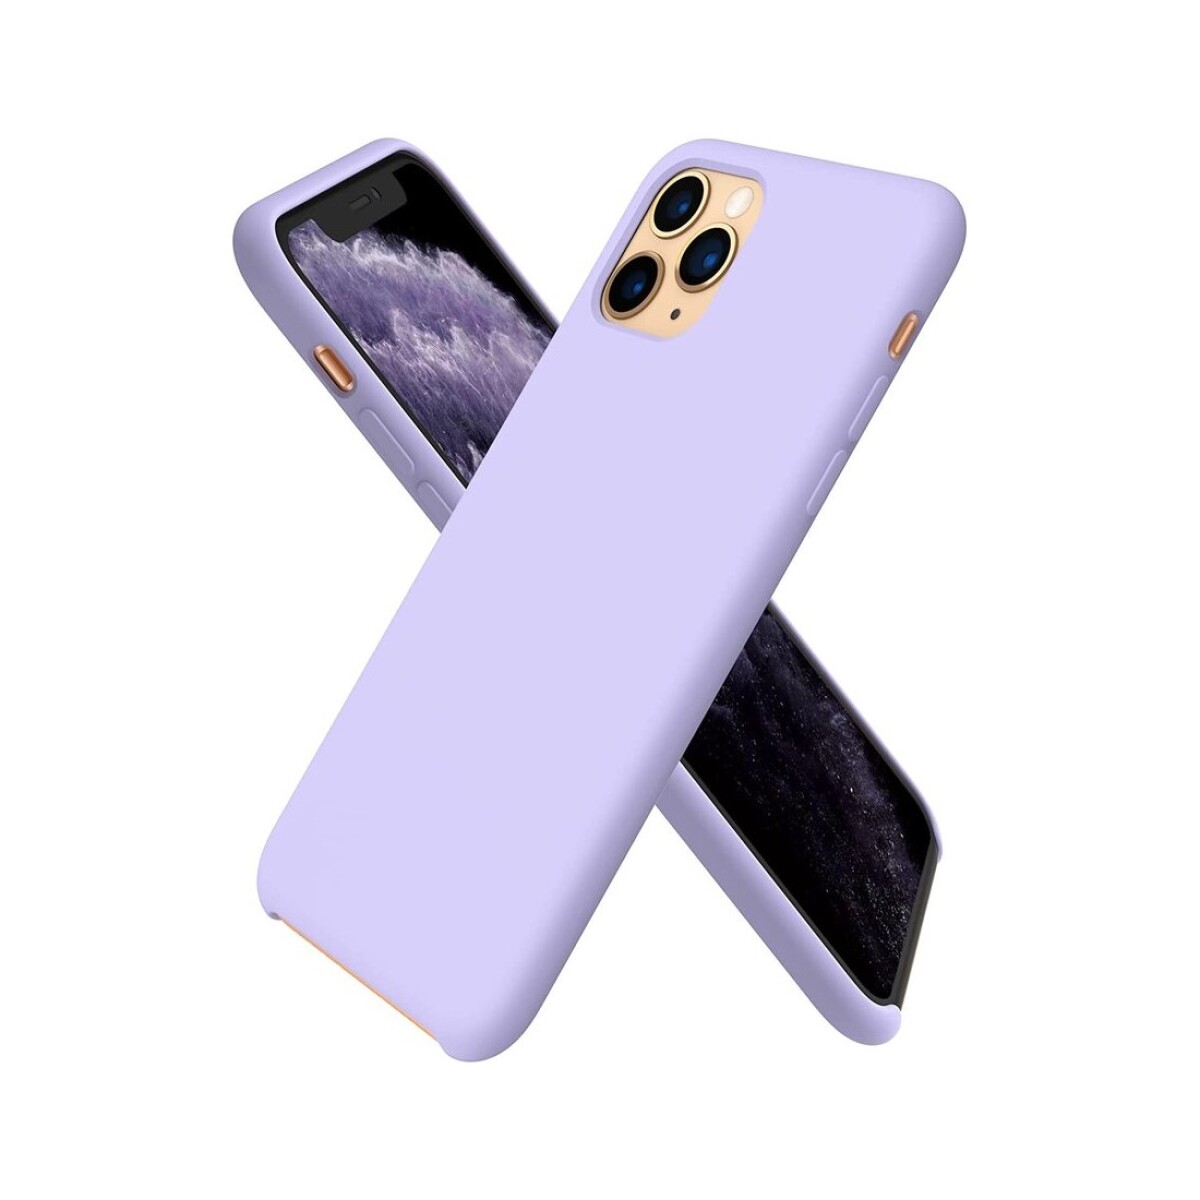 Protector case de silicona para iphone 11 pro Lila pastel